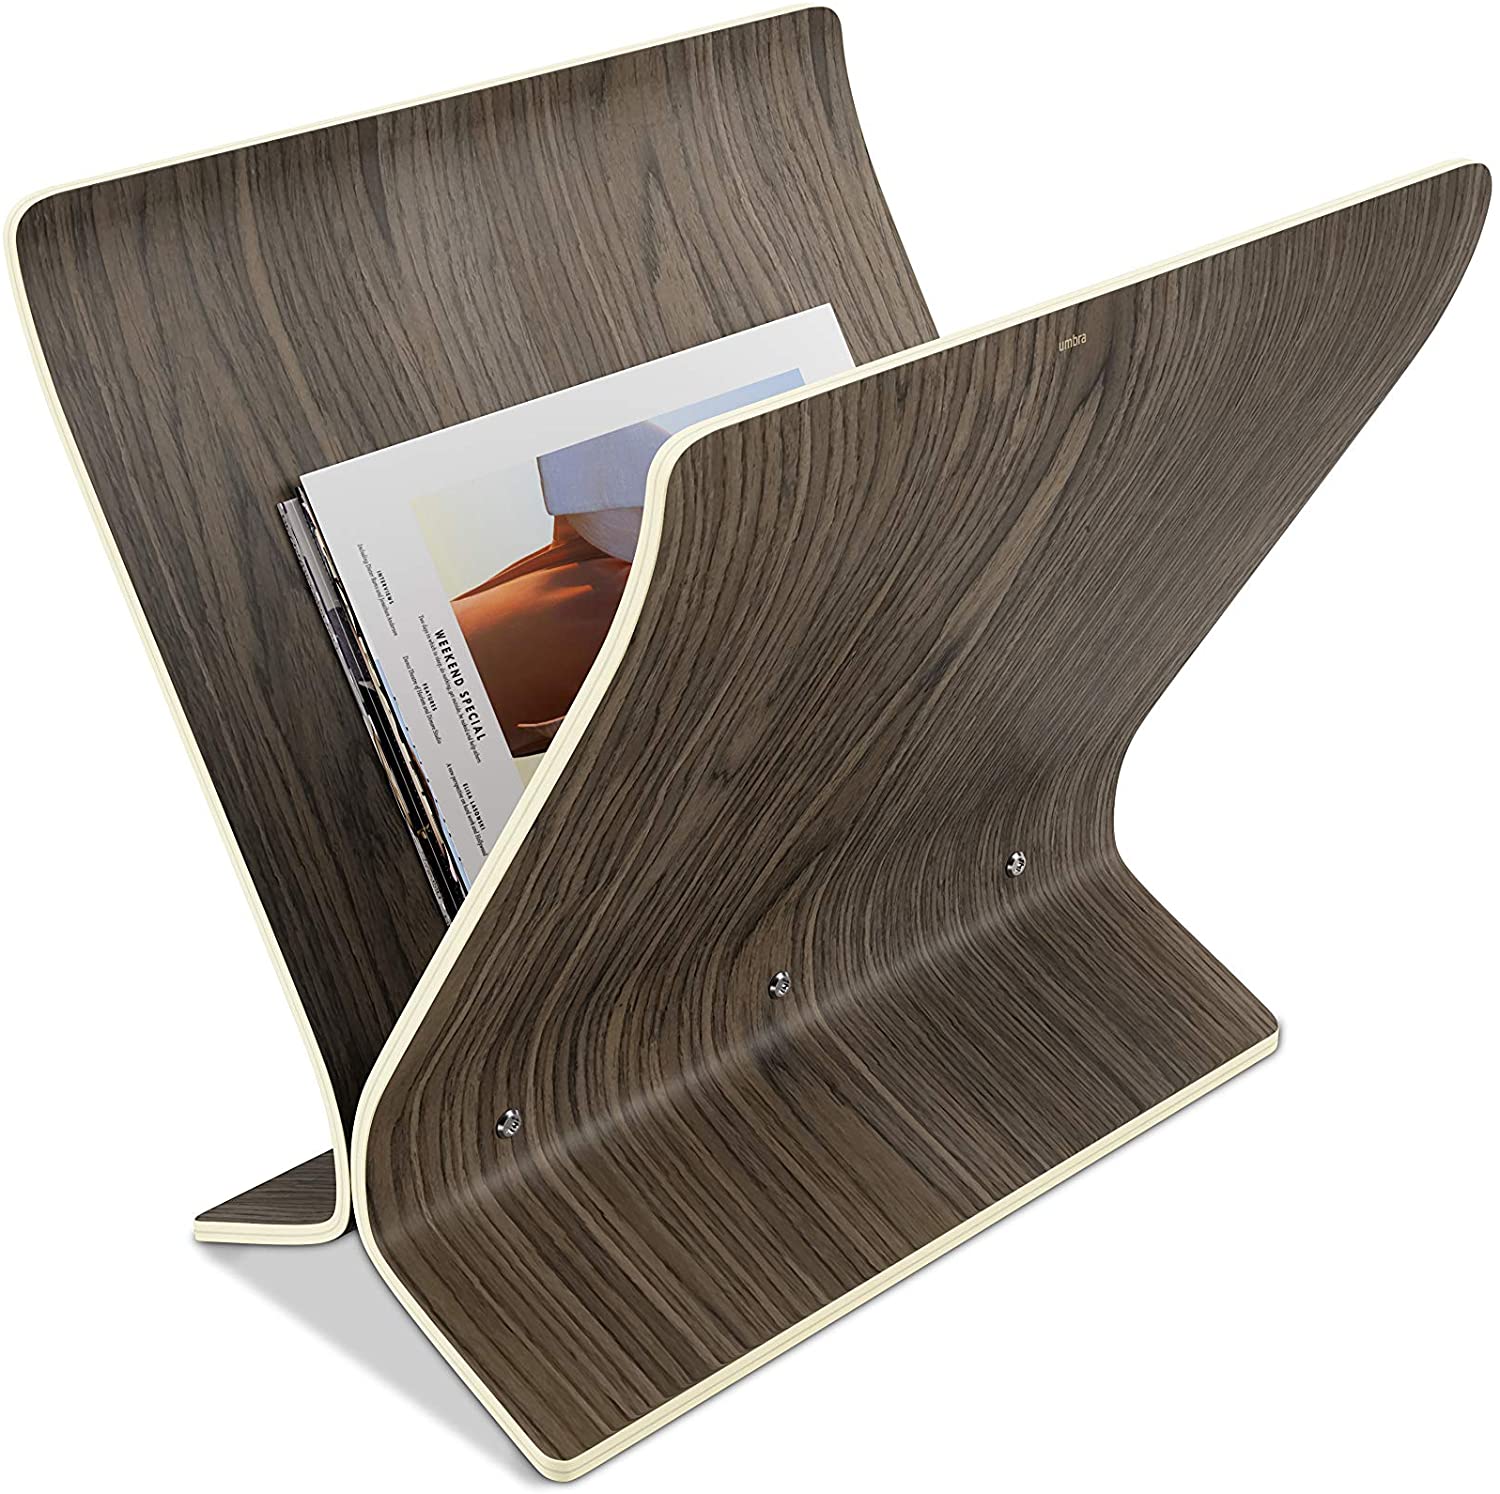 Umbra Freestanding Wooden Magazine Holder And Record Holder